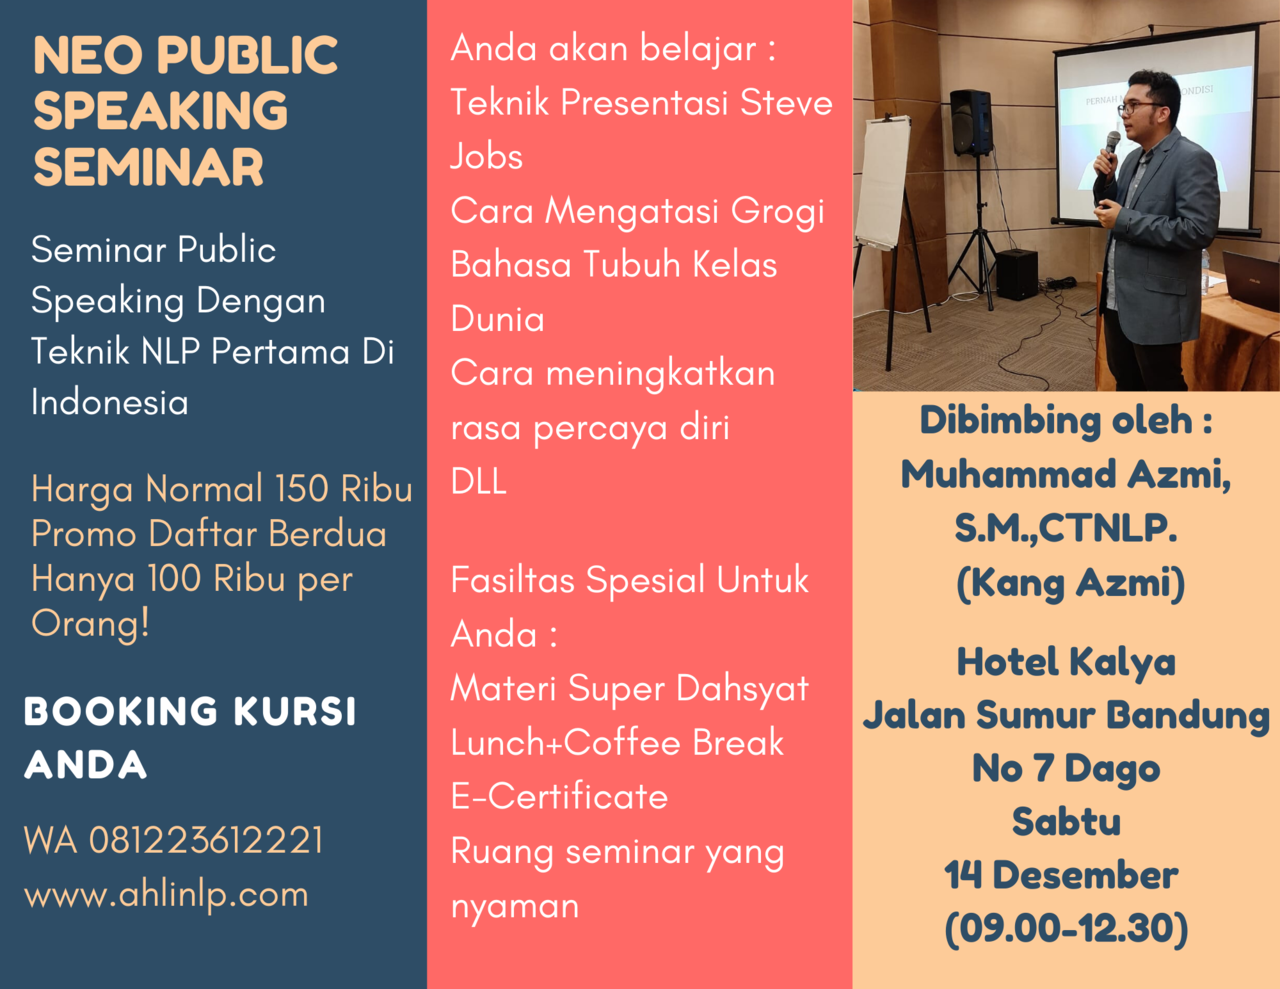 Seminar Public Speaking Terdahsyat Di Bandung